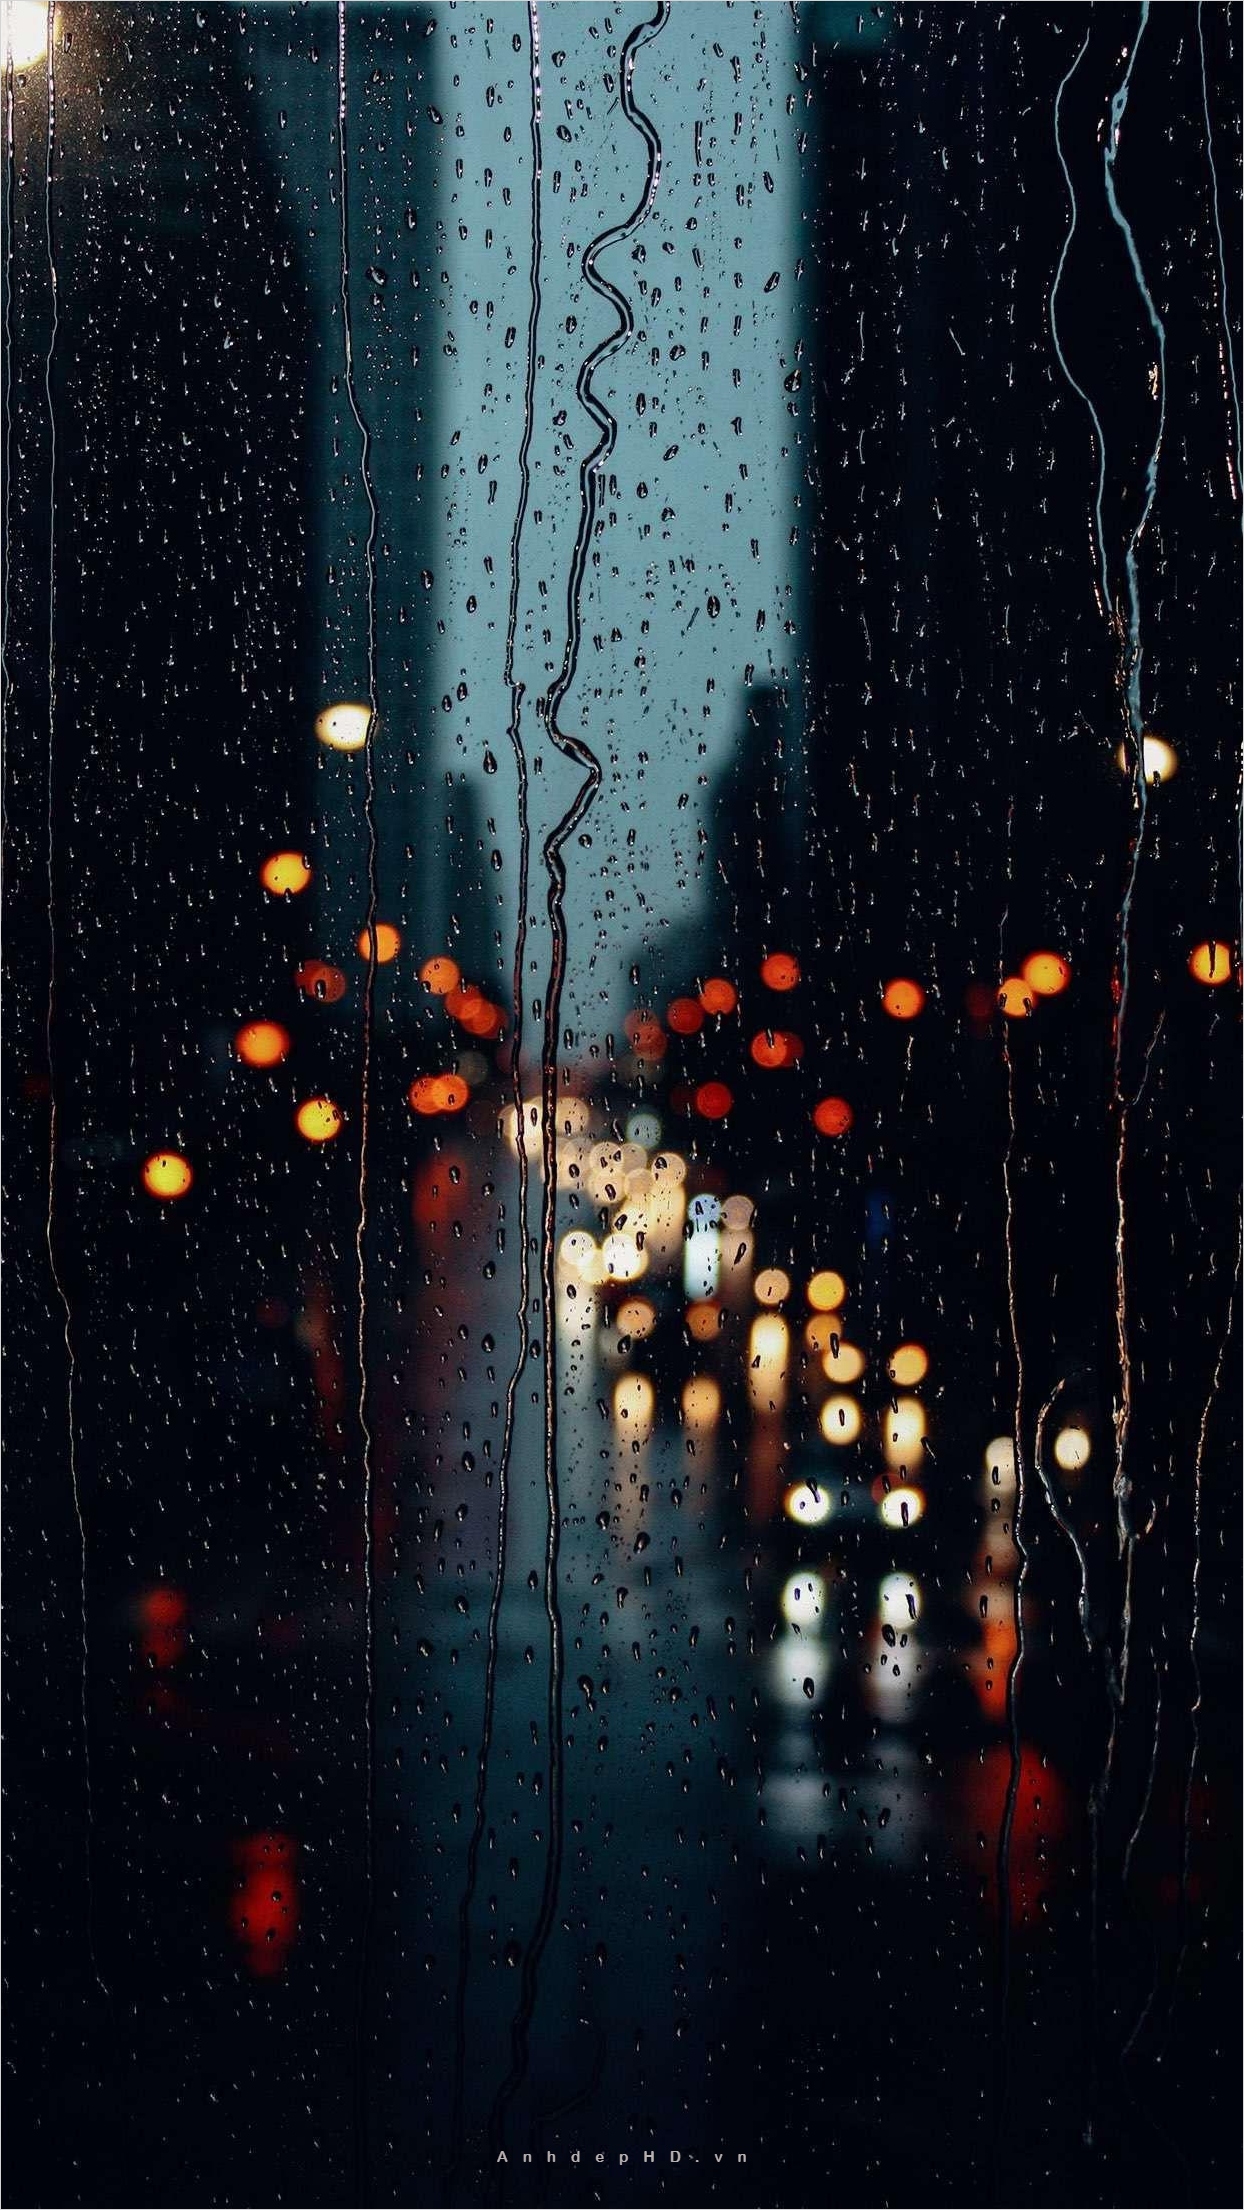 Mưa đêm là thứ khiến tâm trạng của ta trở nên buồn lạnh lẽo. Nhưng hãy để bức ảnh mưa đêm buồn lạnh lẽo đưa ta vào một thế giới riêng, nơi ta có thể tìm kiếm sự thoải mái trong suy nghĩ, cảm nhận khúc ca buồn với âm thanh mưa nhè nhẹ.